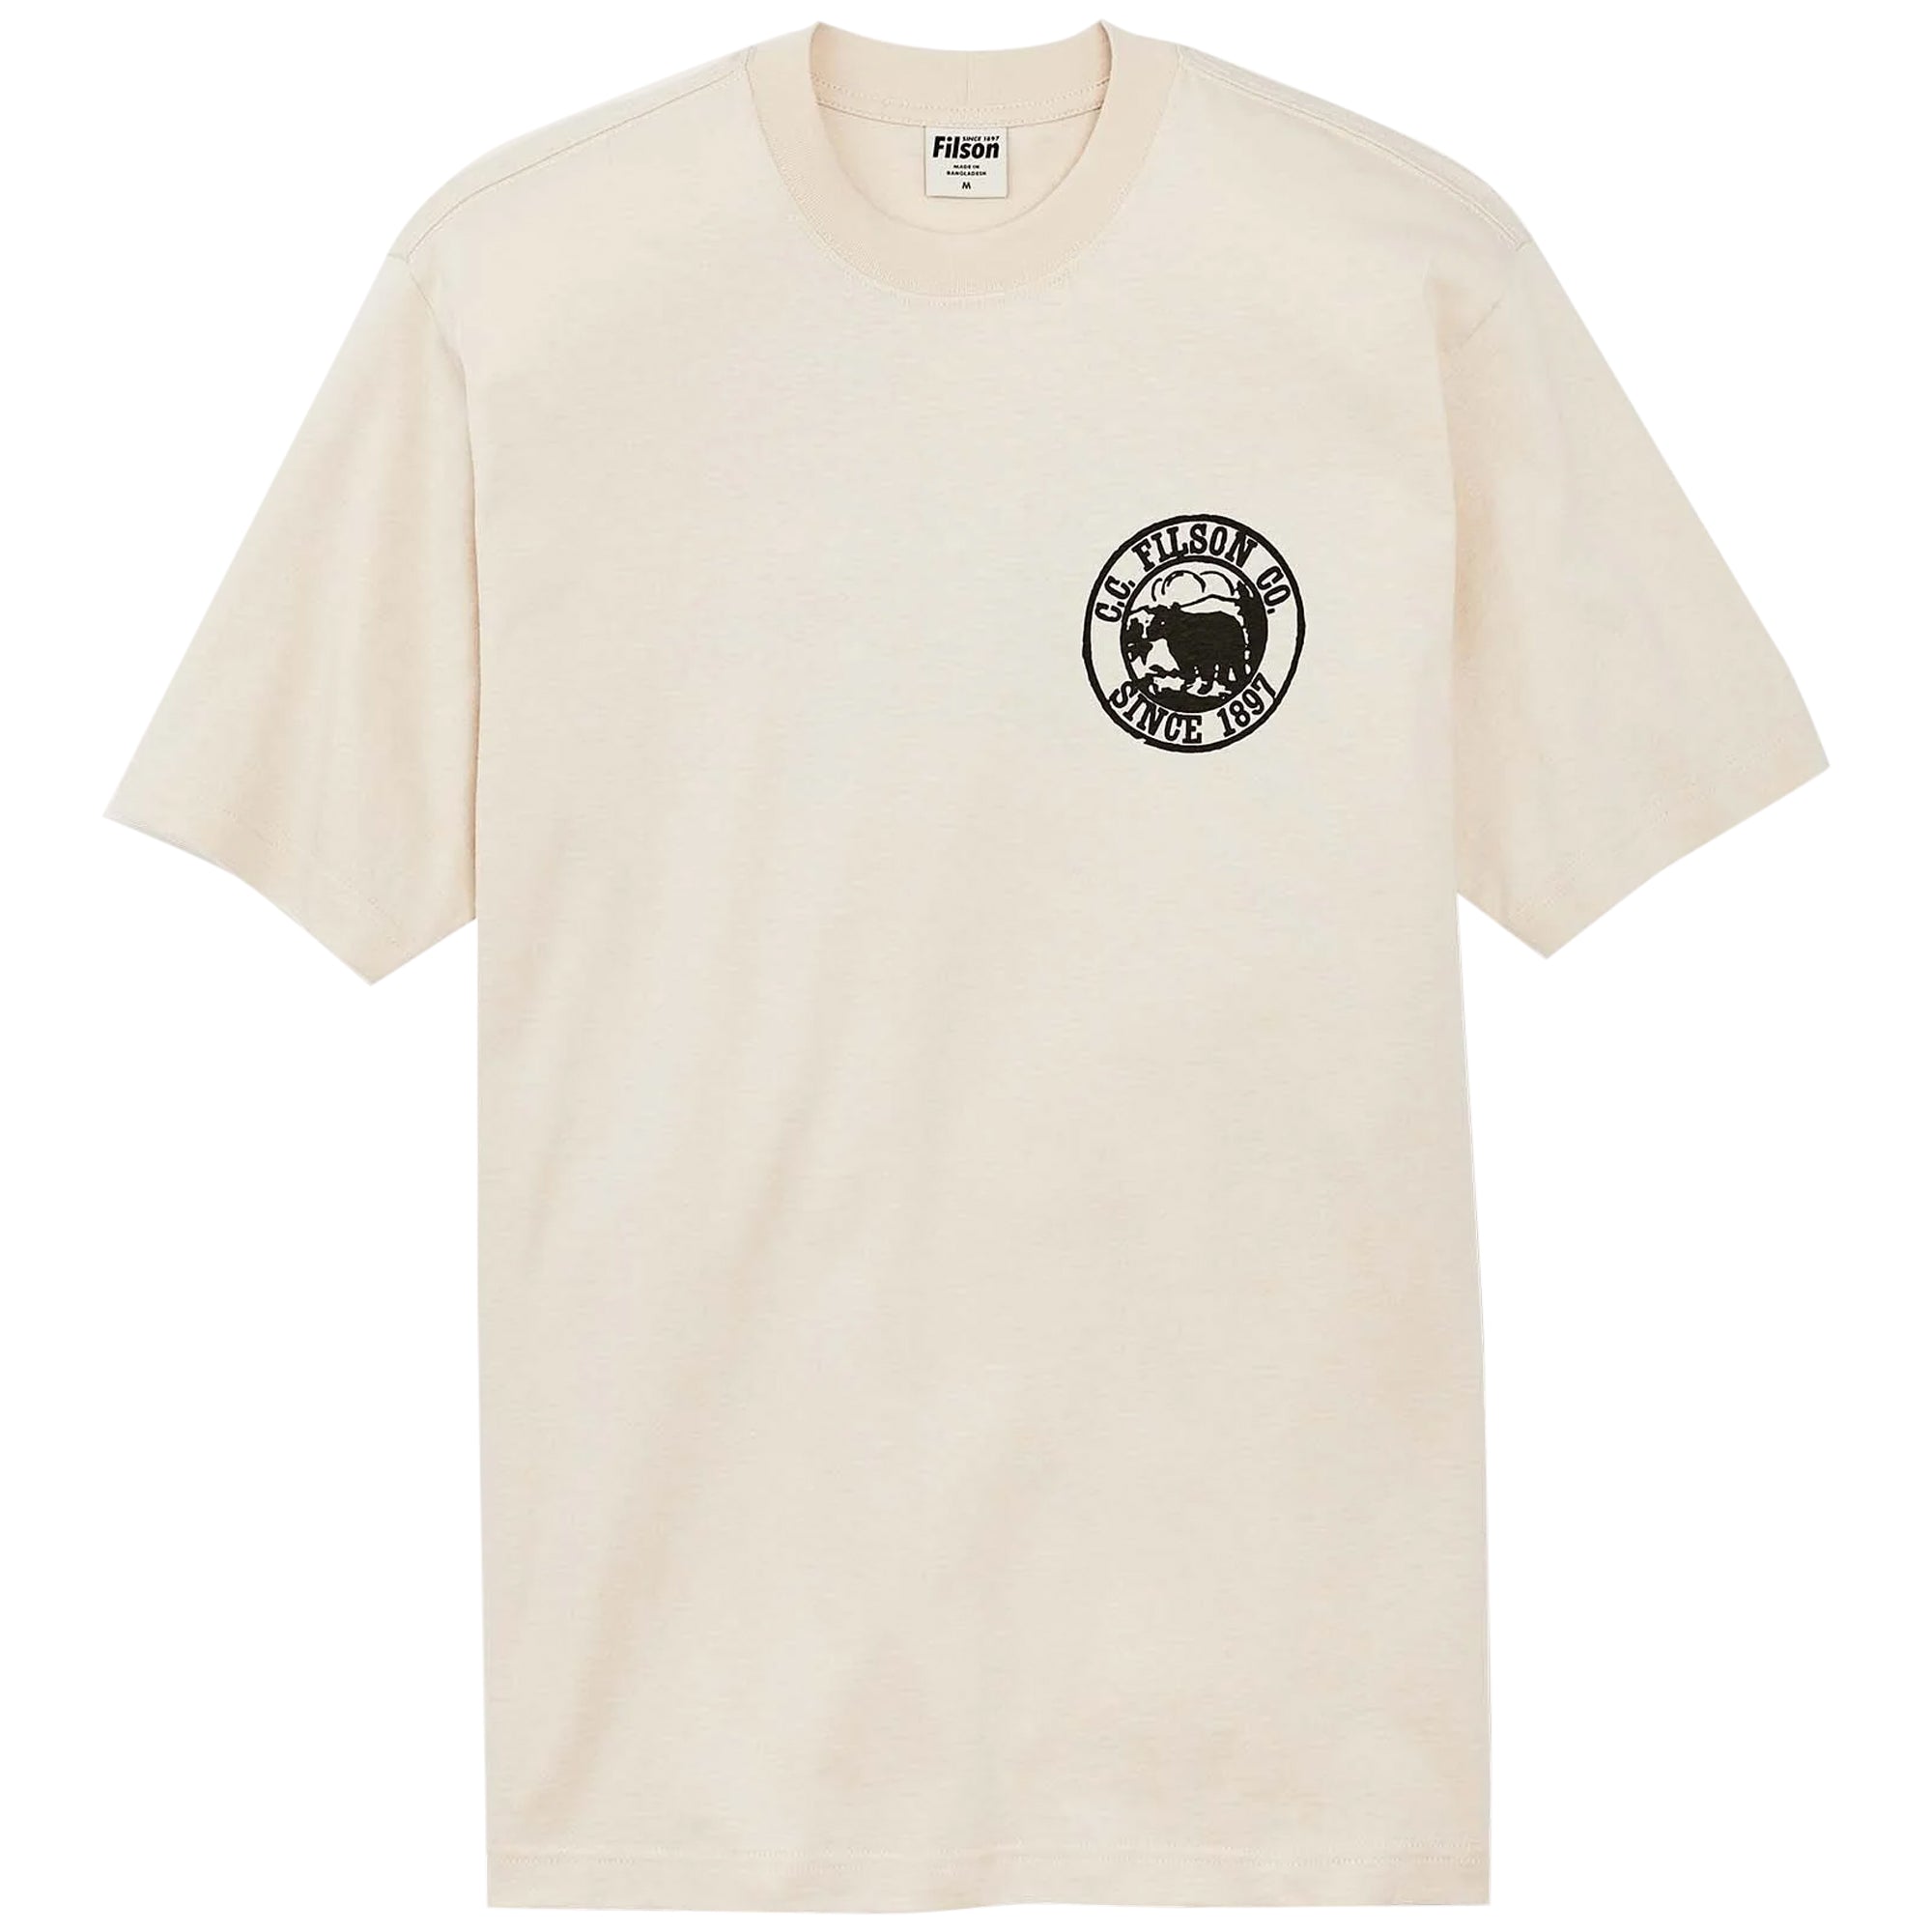 Filson Frontier Graphic T-Shirt - Natural/Bear